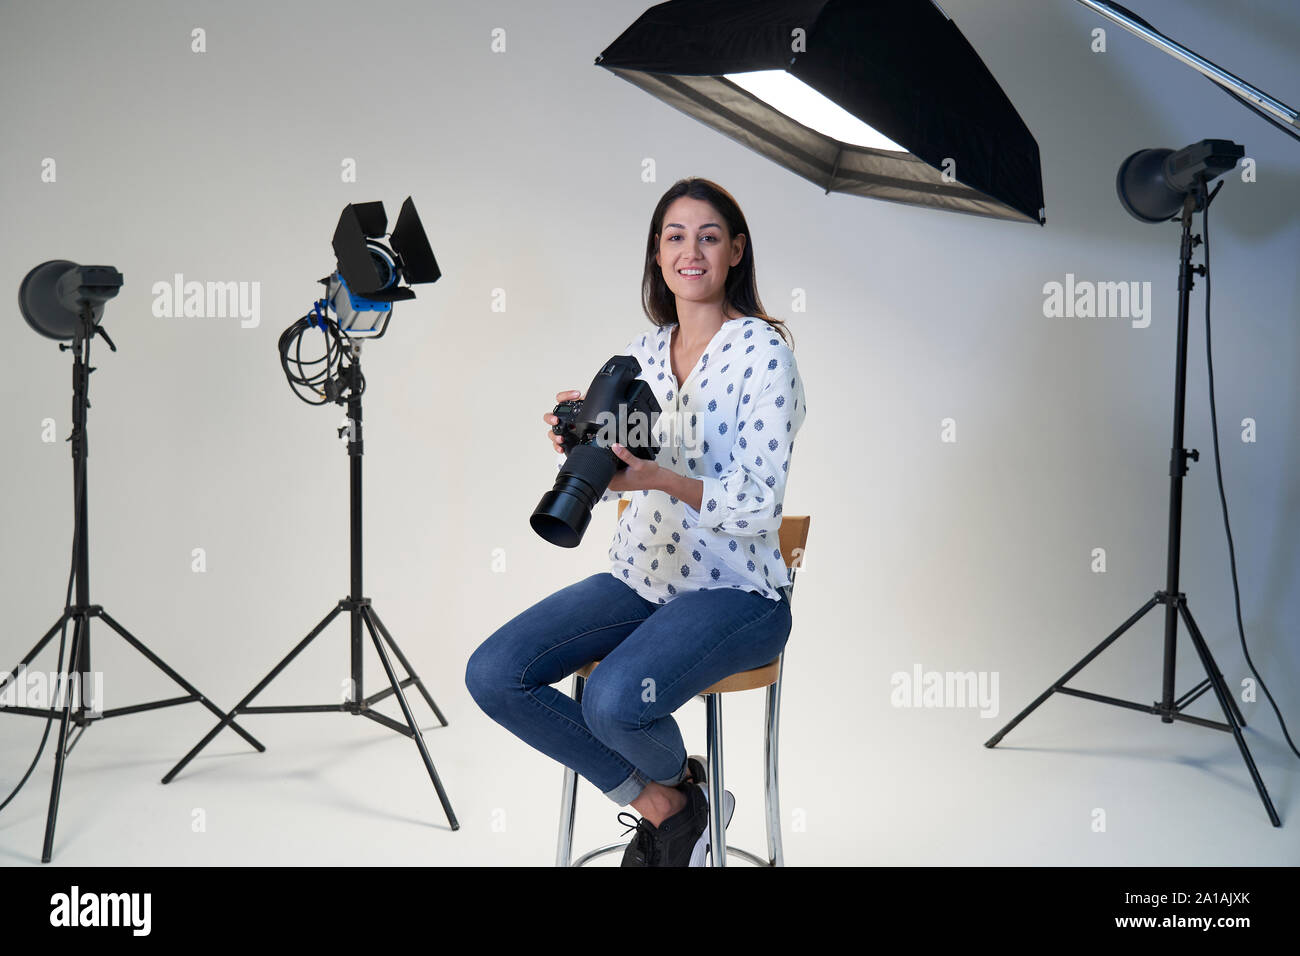 Portrait de femme photographe en studio pour la séance photo avec l'appareil photo et l'équipement d'éclairage Banque D'Images